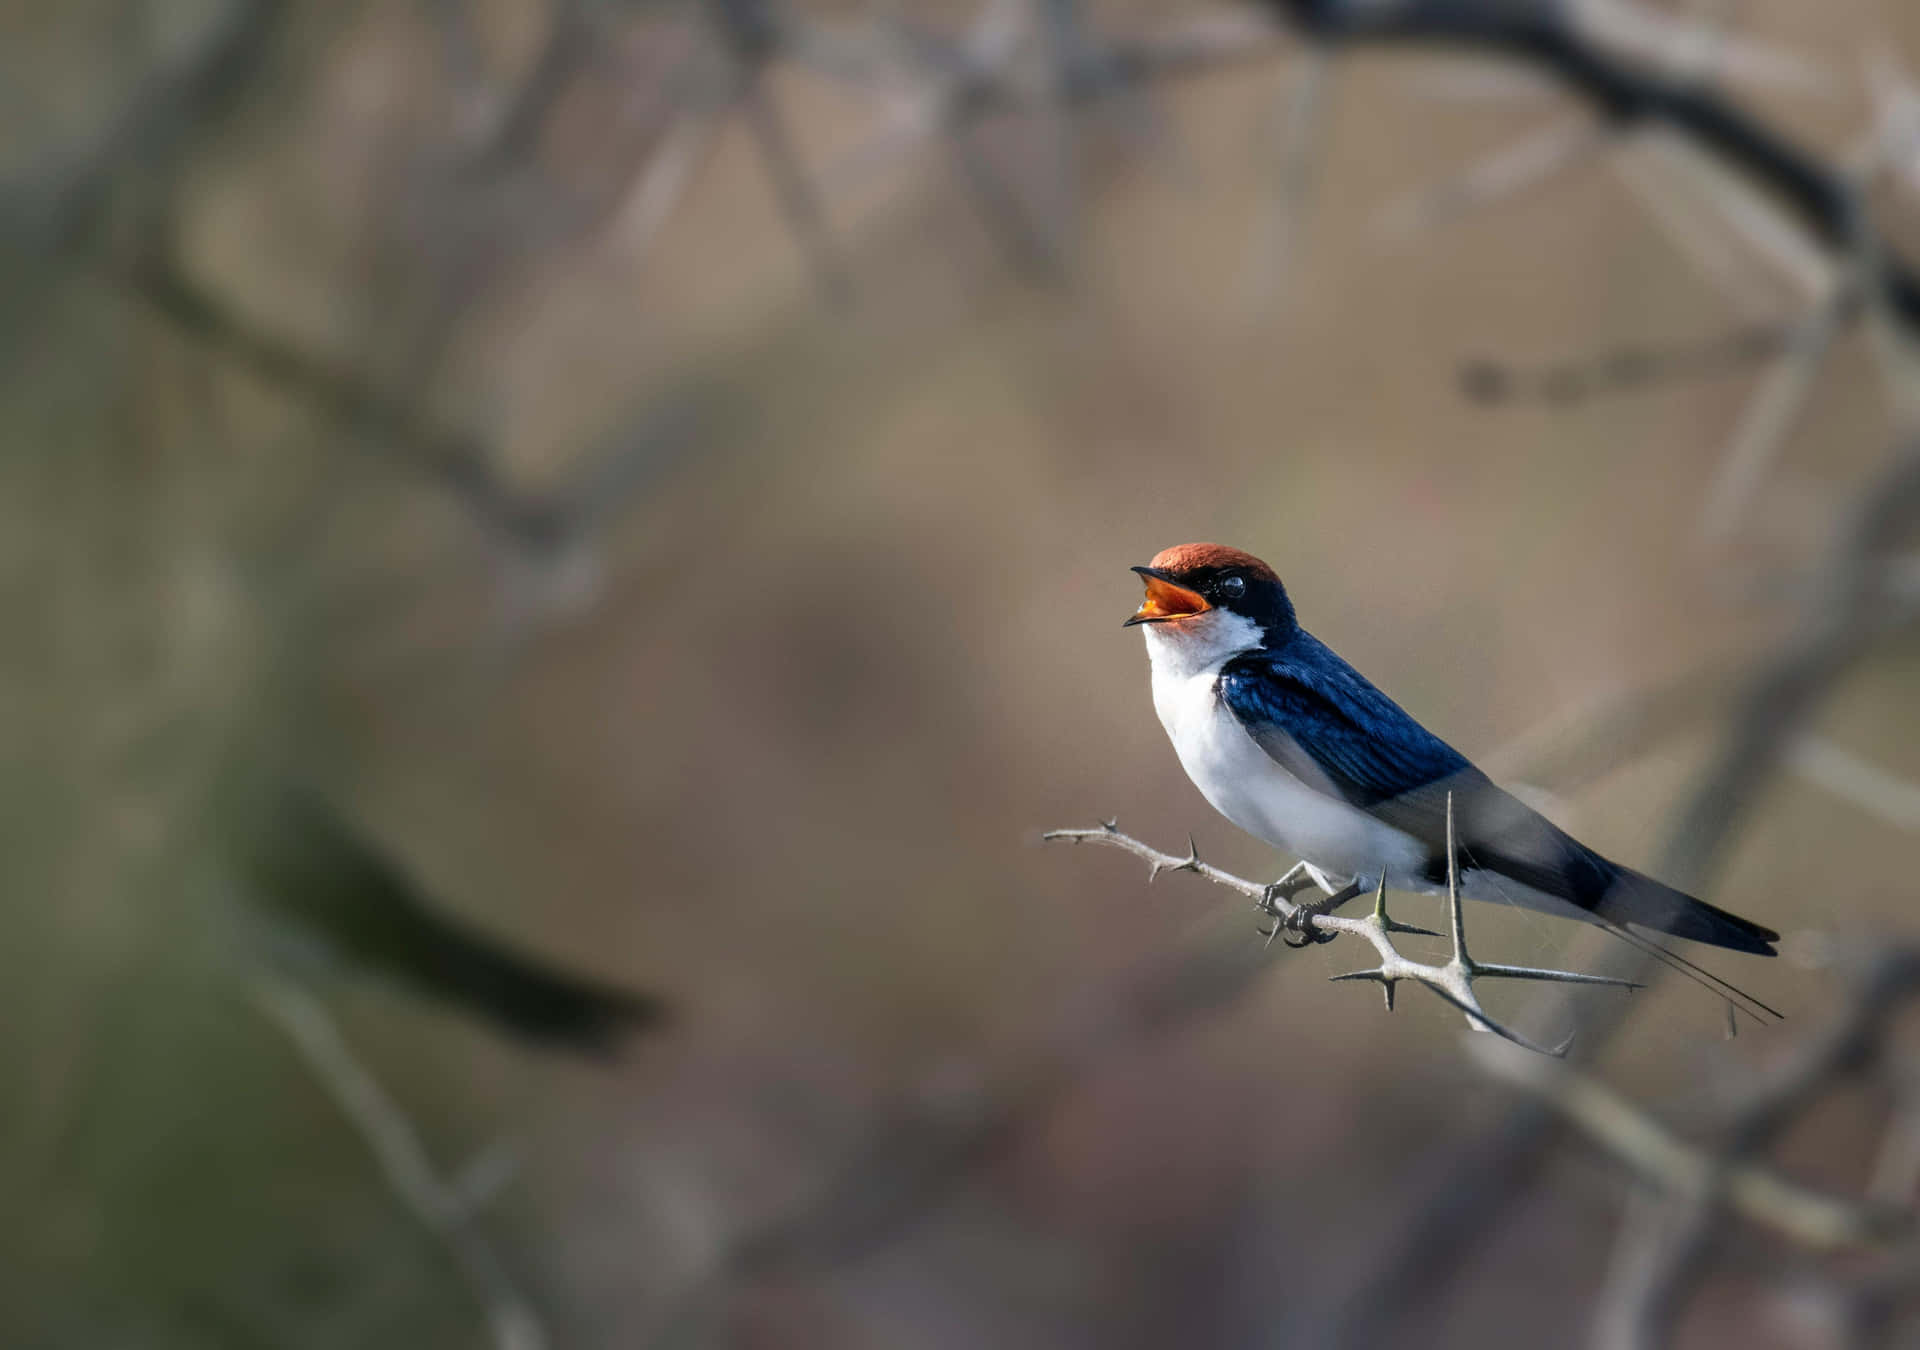 Swallow Perchedon Branch Wallpaper